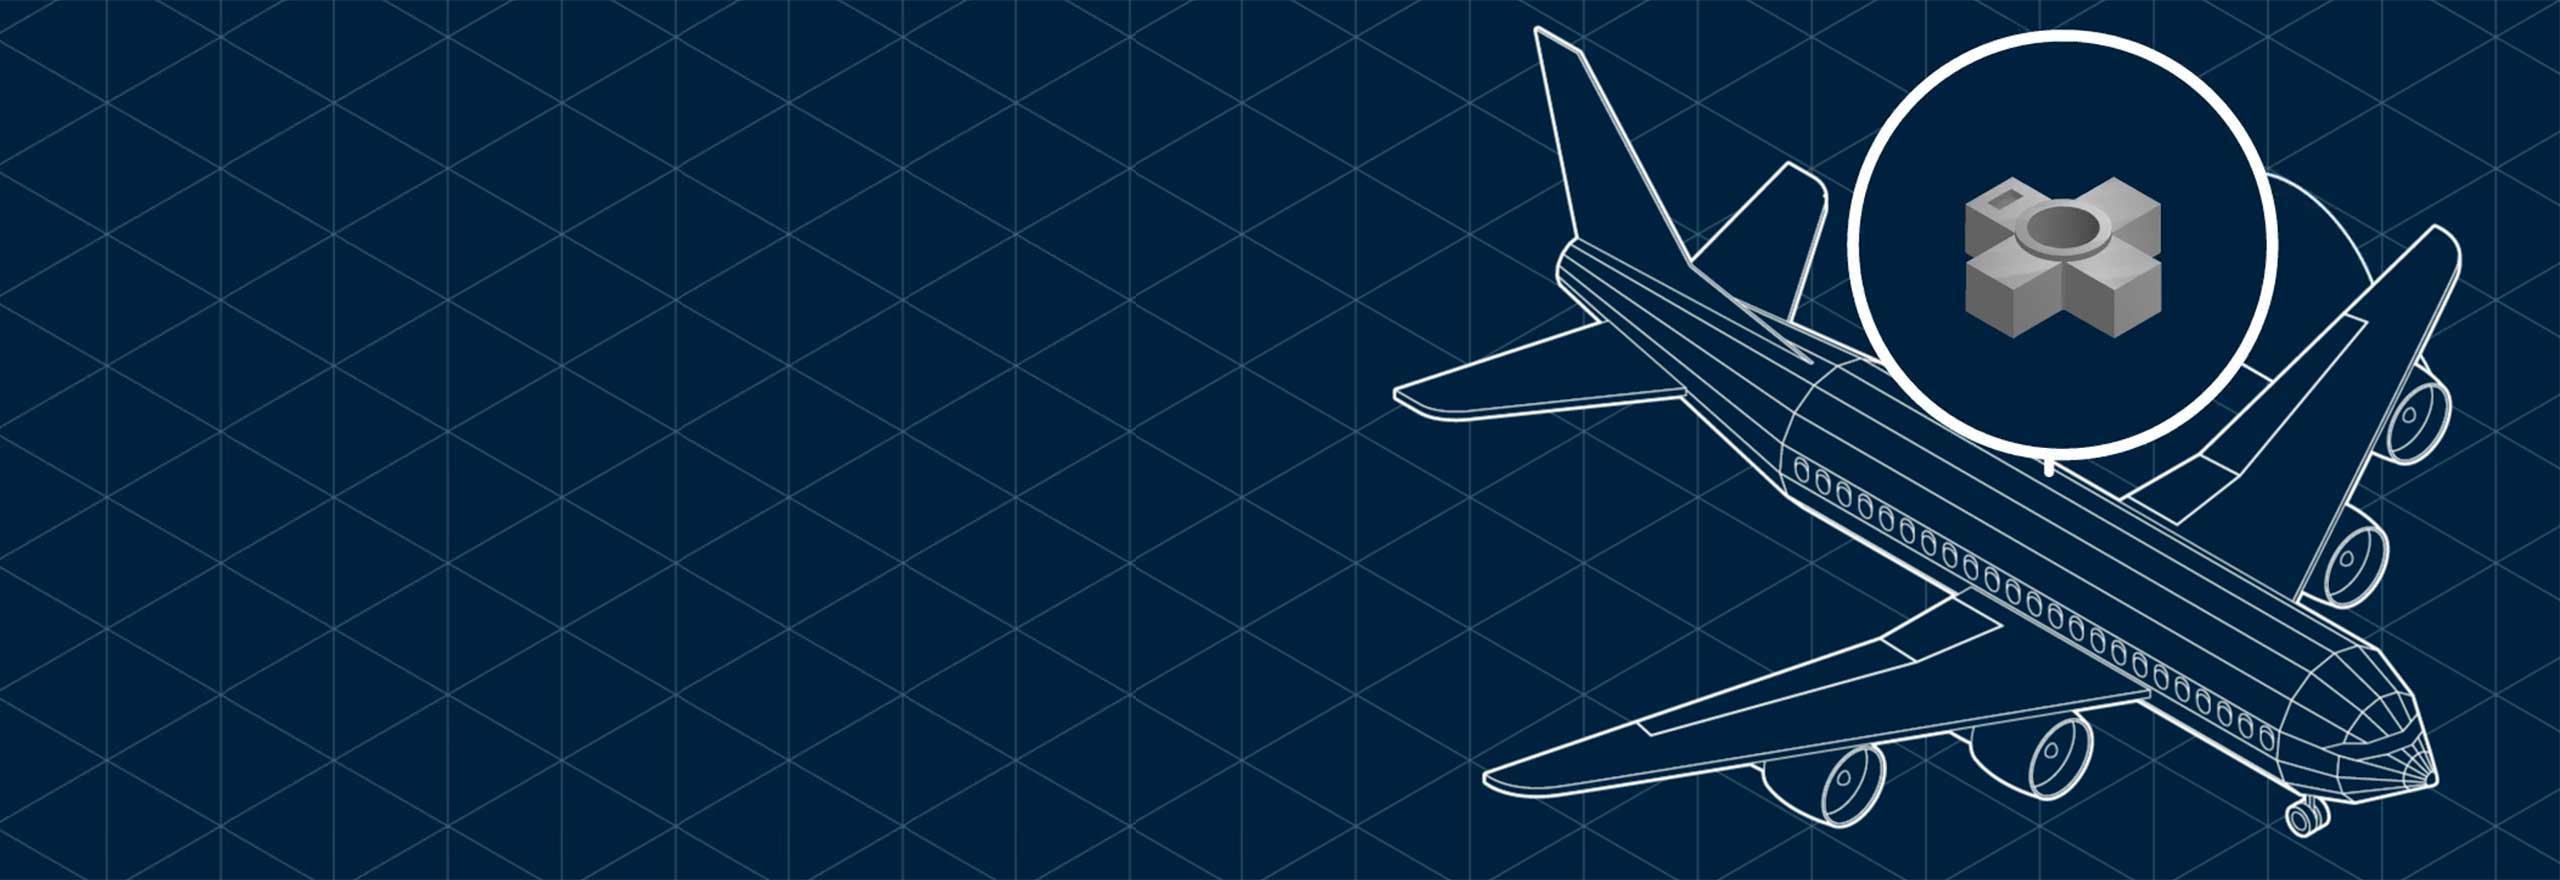 Desenho de aviões em fundo azul de triângulos, ilustrando a engenharia reversa de uma peça na fabricação aditiva